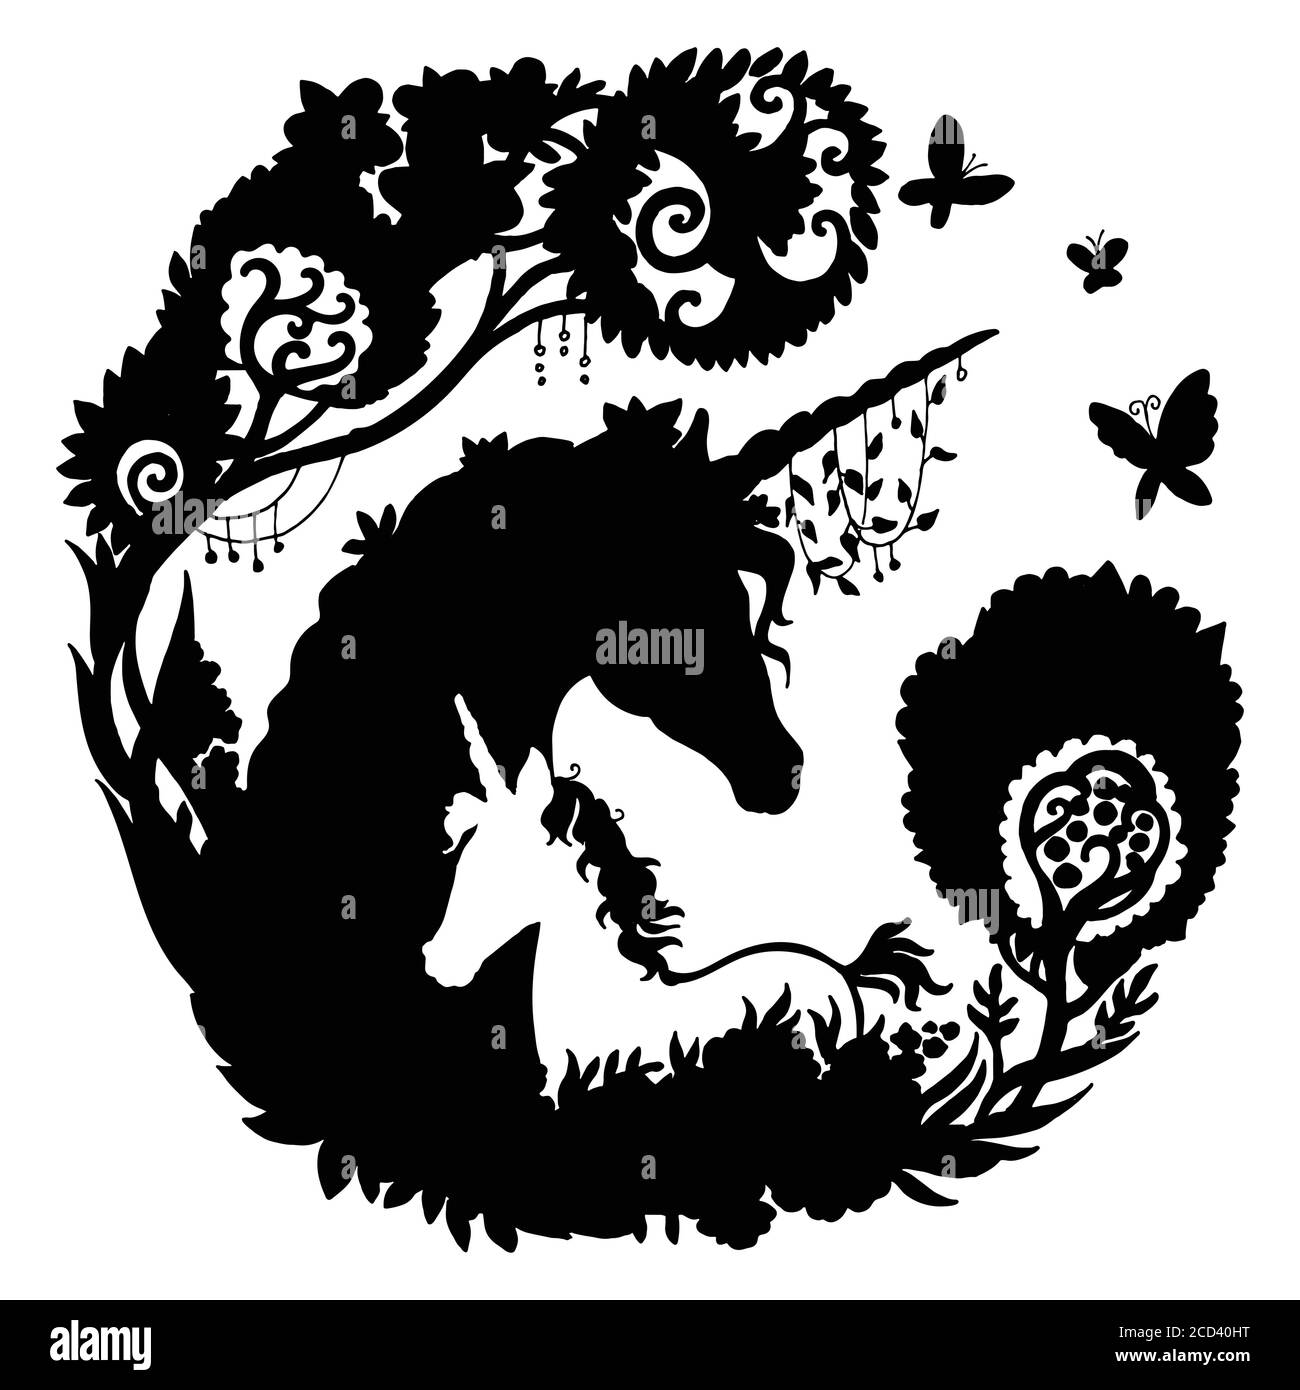 Vettore bello unicorno e nemico con alberi e farfalla in composizione circolare. Immagine della silhouette nera isolata su sfondo bianco. Per temp Illustrazione Vettoriale